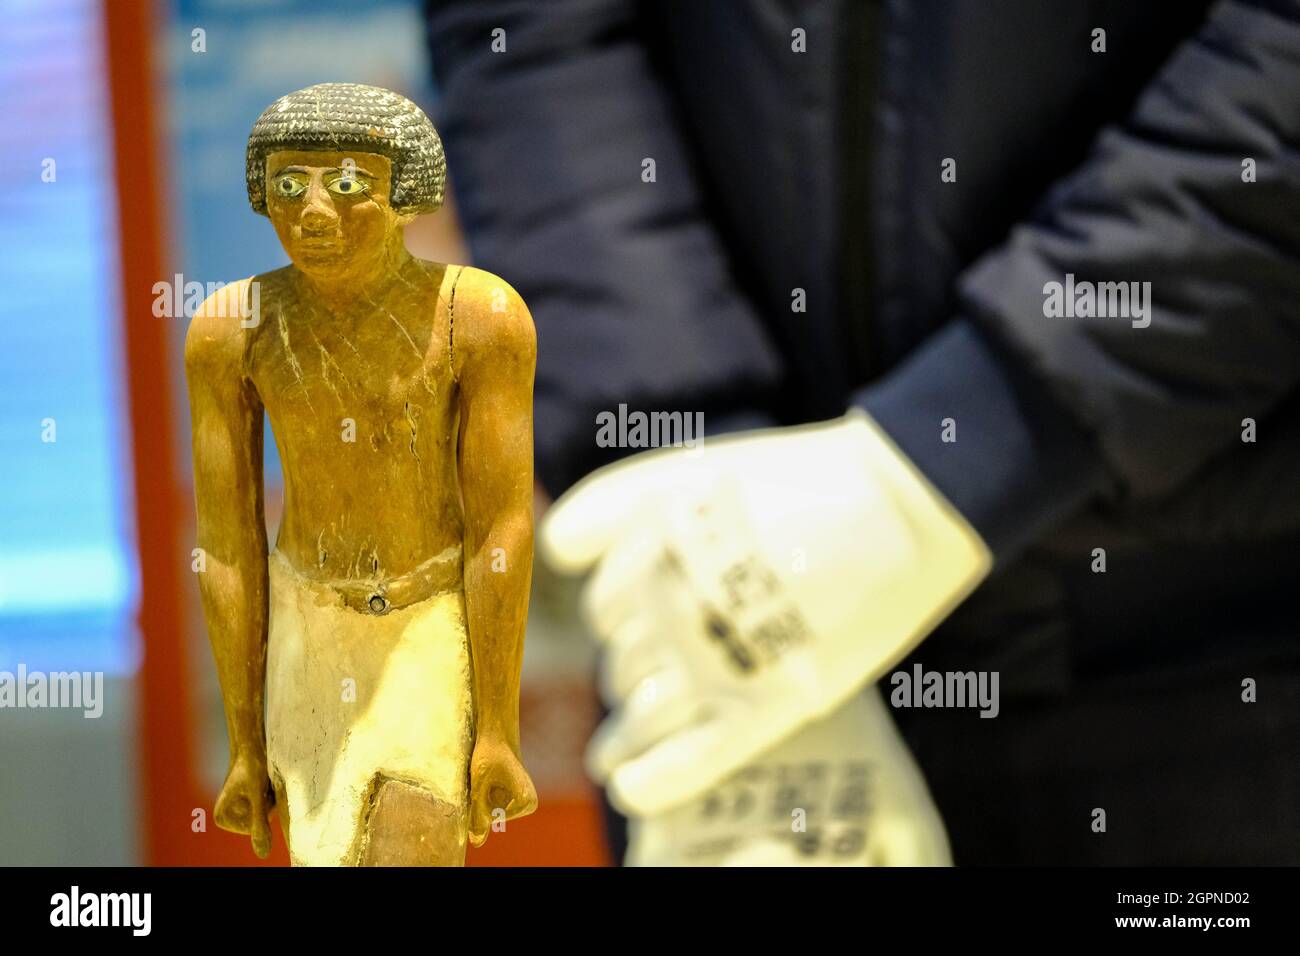 Die Abbildung zeigt ein geplündertes Kunstobjekt, das am Donnerstag, dem 30. September 2021, in Brüssel bei einer Pressekonferenz zur RE nach Ägypten zurückgebracht wird Stockfoto